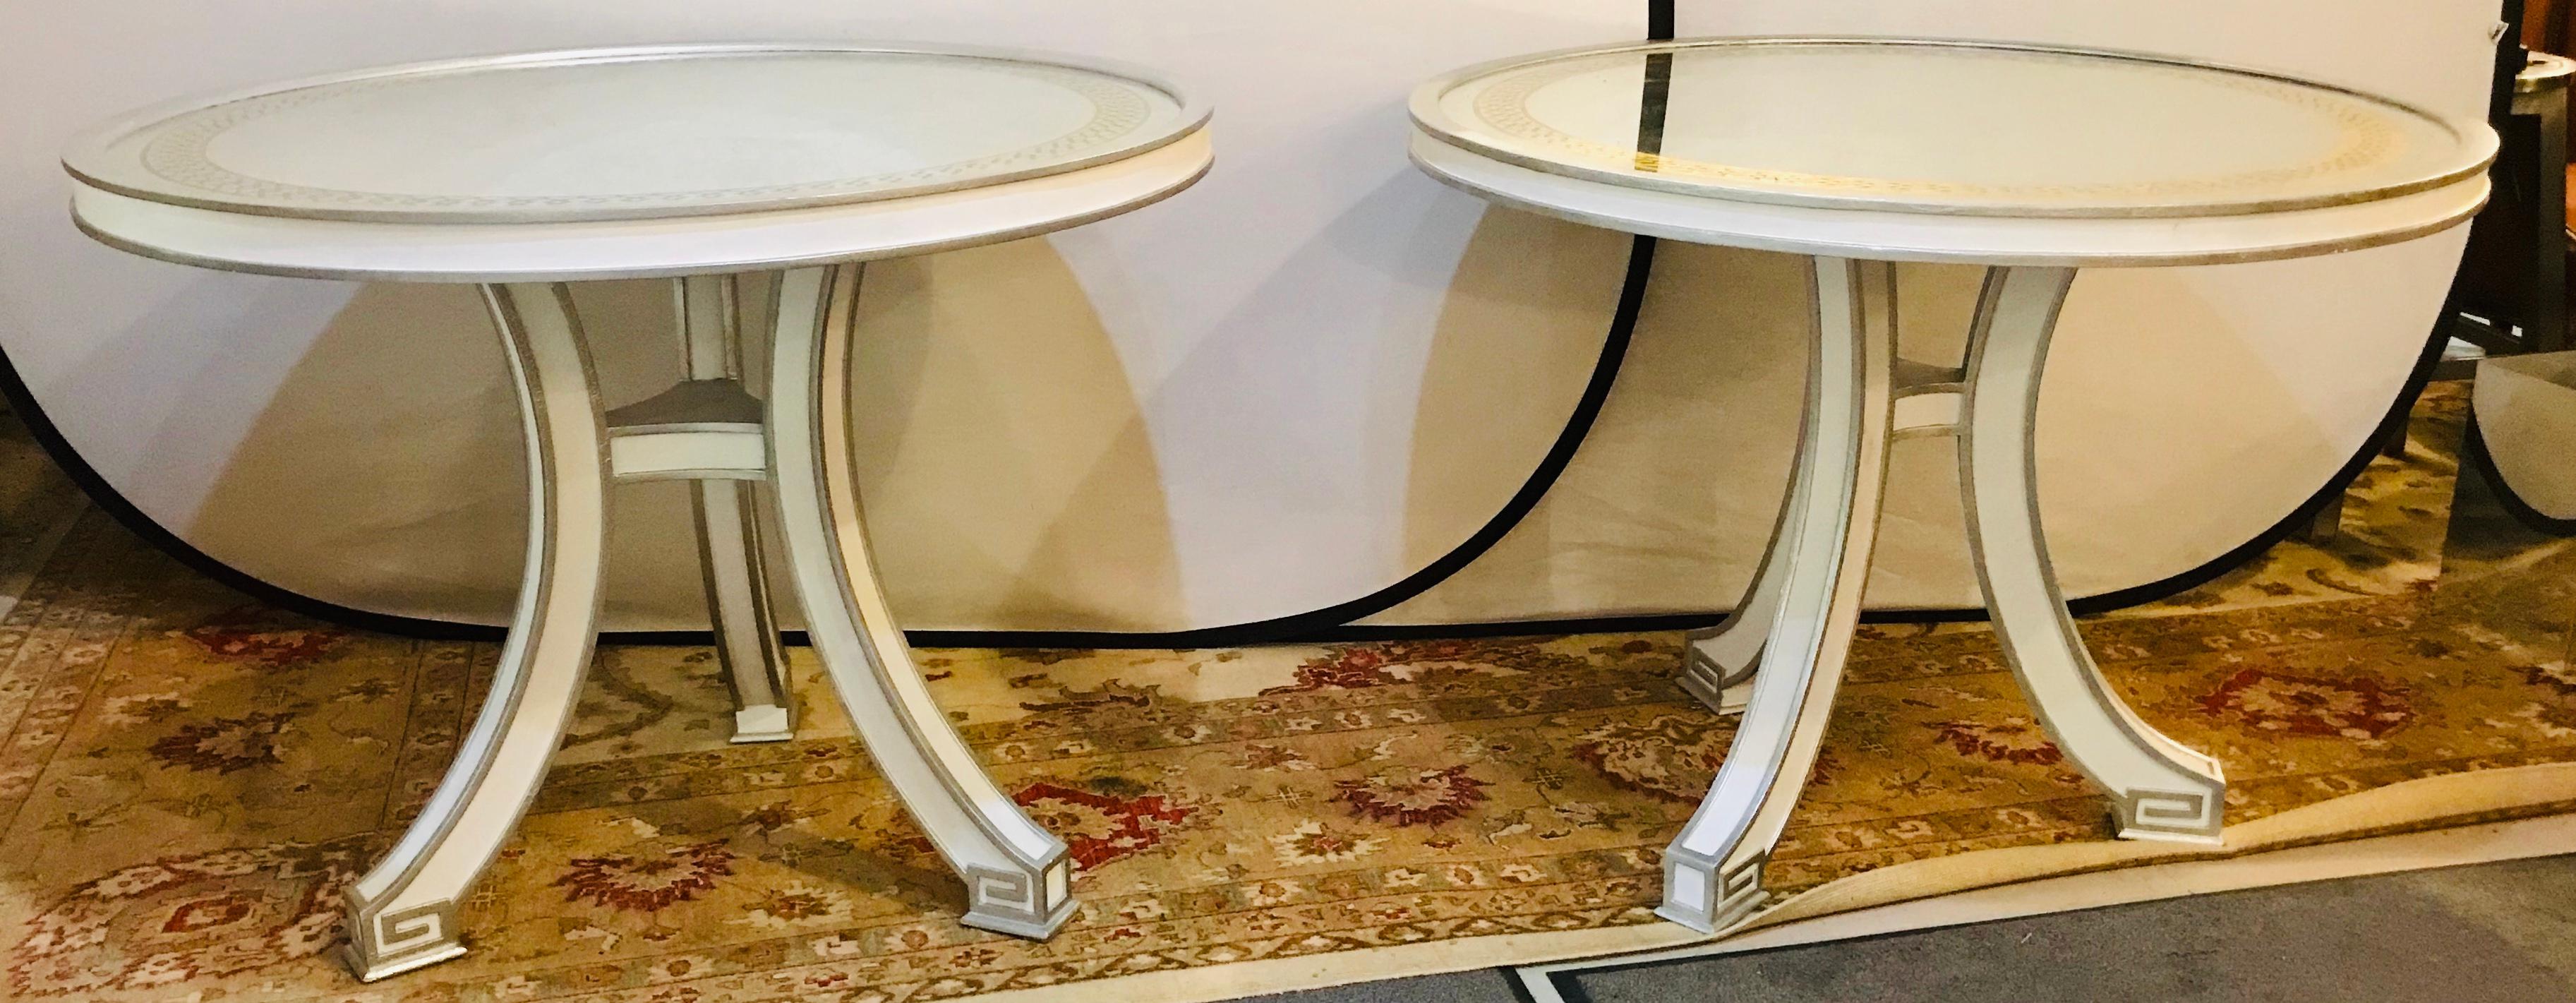 Paire de tables d'appoint ou de centre de table compatibles à plateau églomisé peint. Chacune de ces tables d'appoint de qualité personnalisée a un plateau de table en verre églomisé de forme miroir avec une bordure dorée en forme de boîte croisée